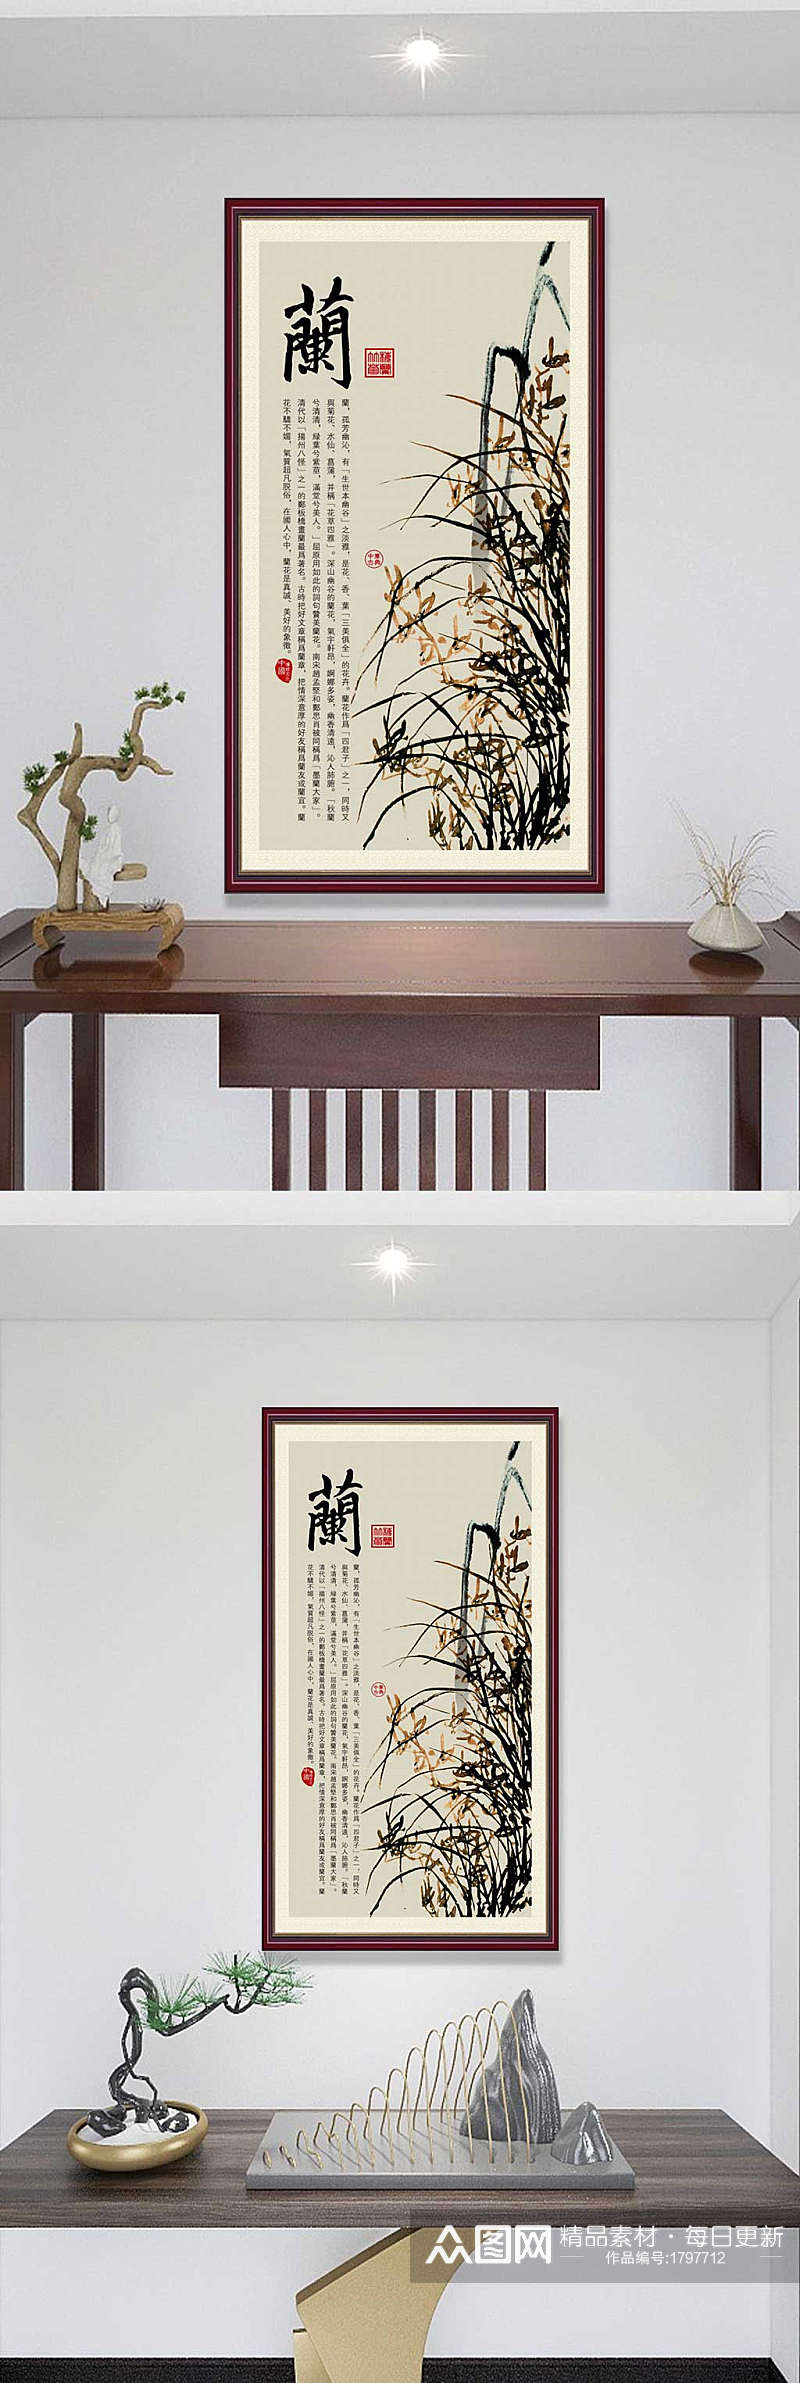 中式风格玄关兰花装饰画素材